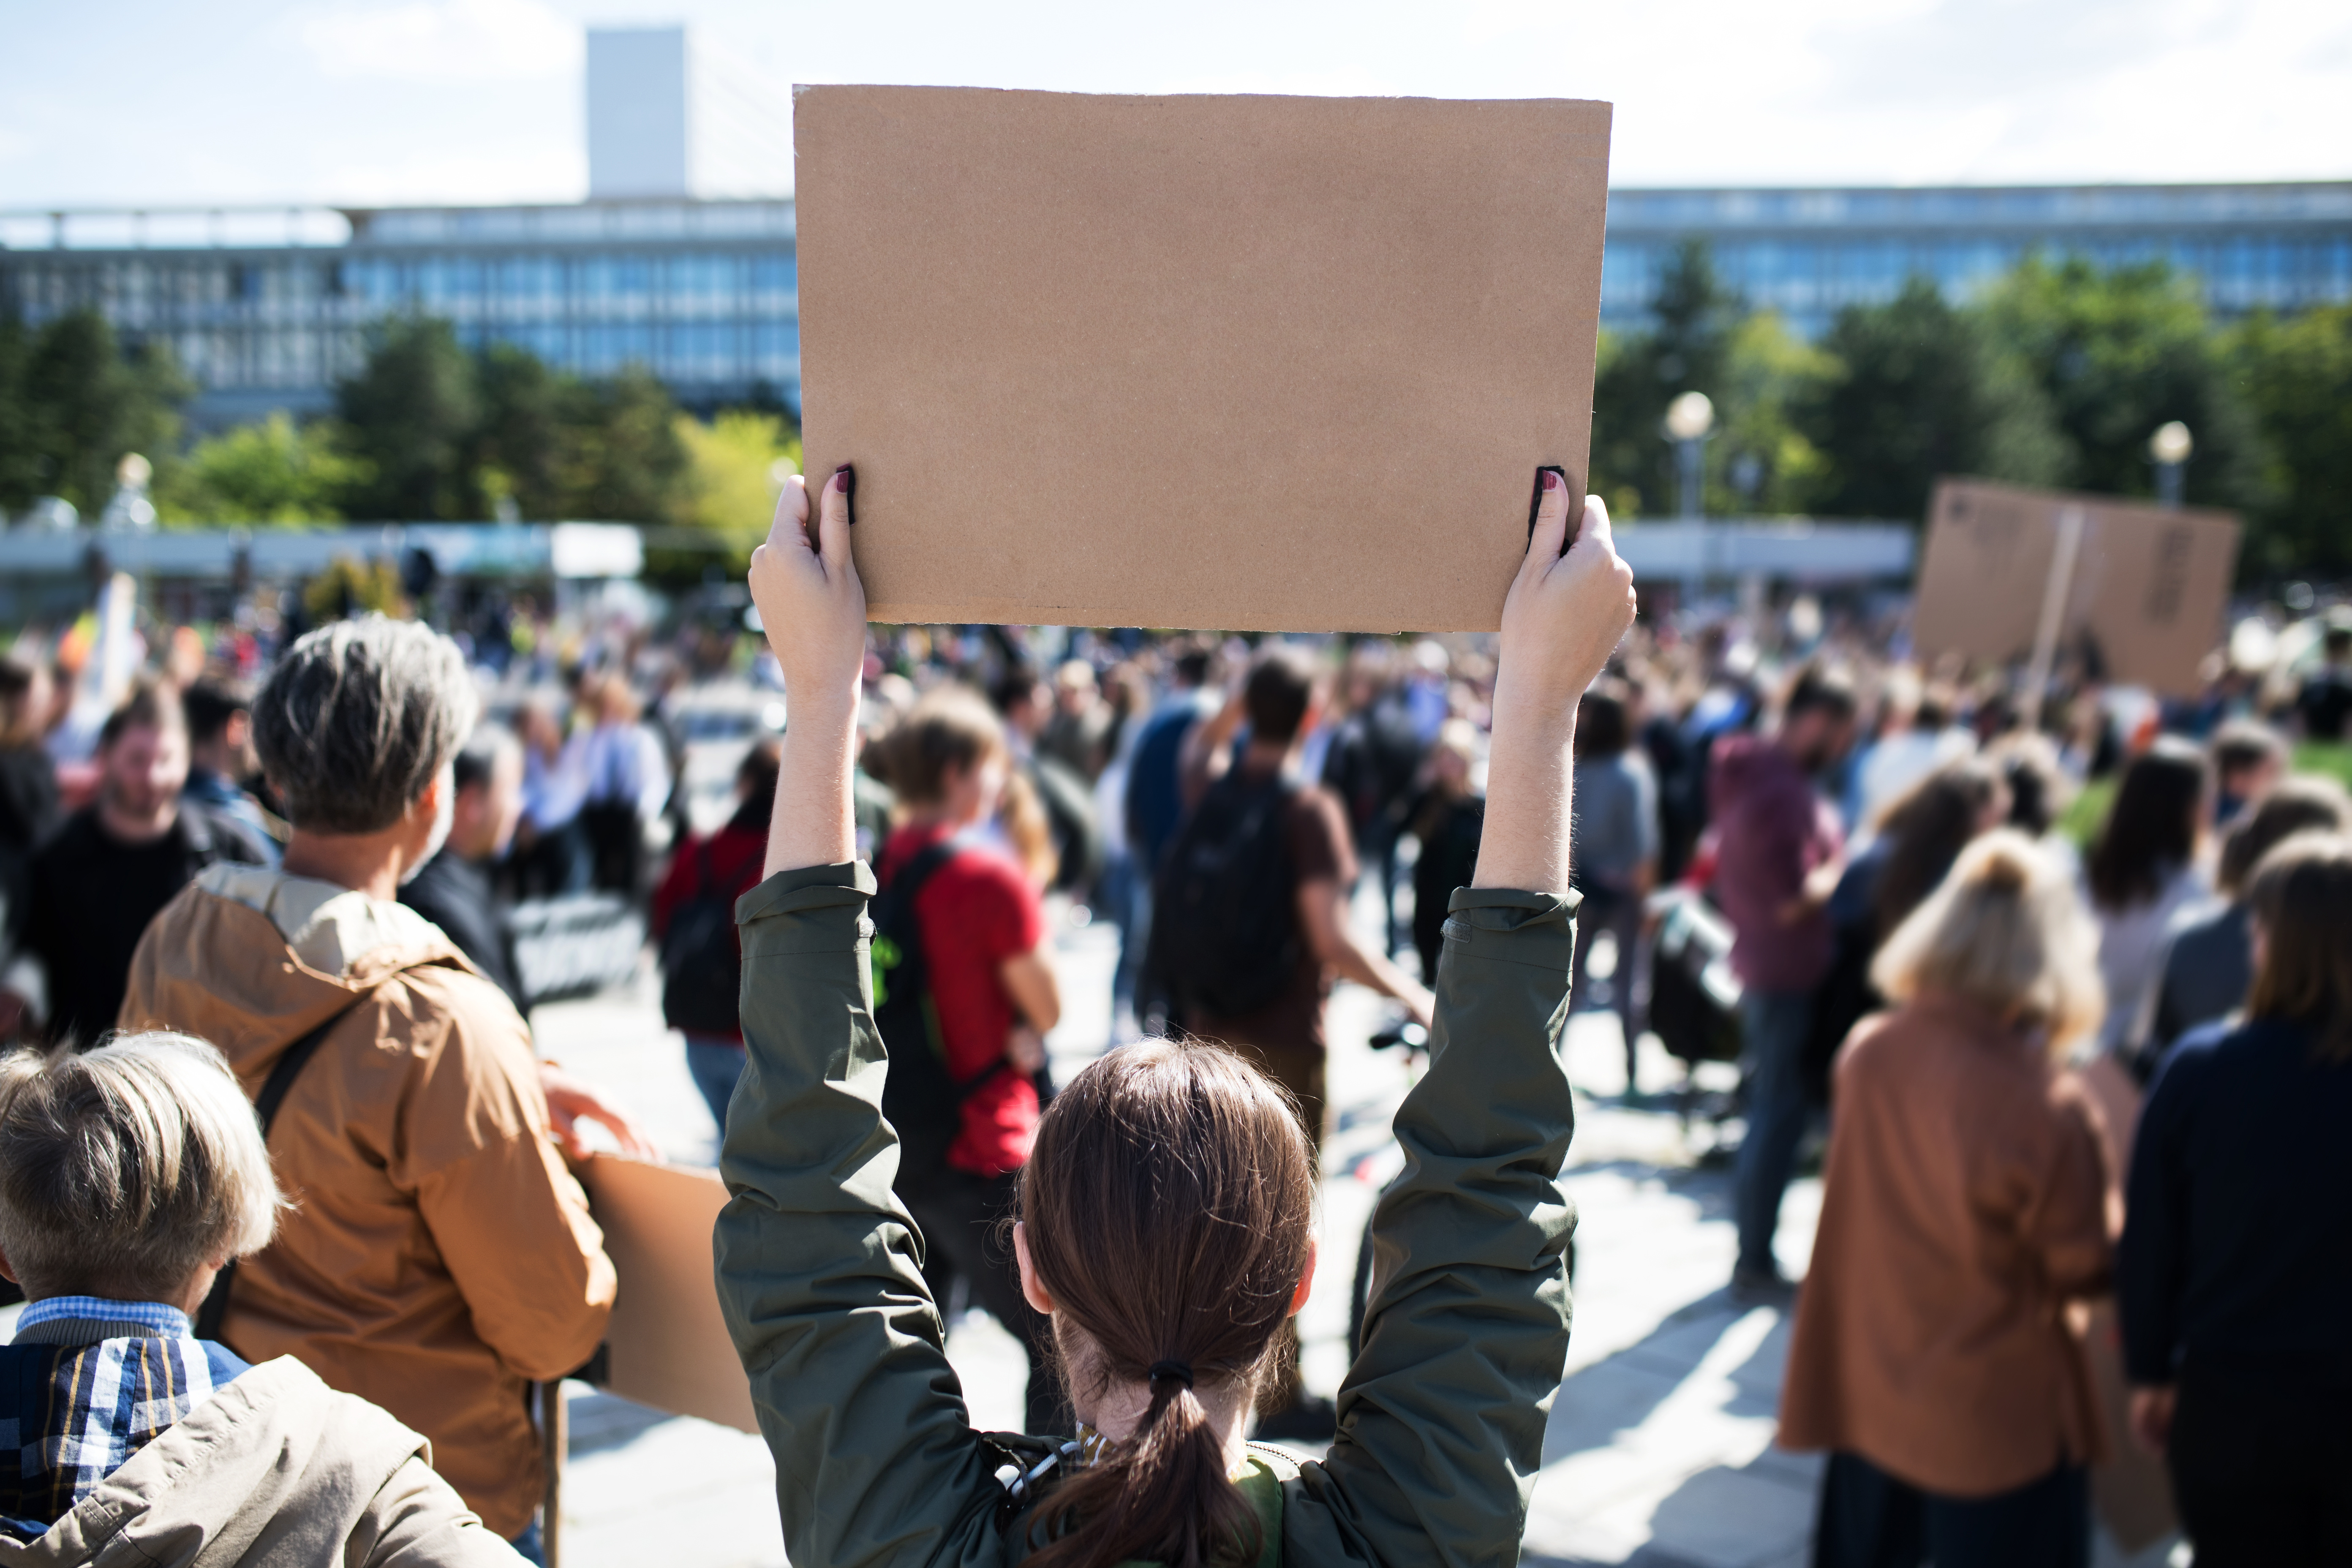   »Wir sind alle Linx« demonstriert in Leipzig | Bundesweite Demo am Samstag fordert Auflösung der Soko Linx  